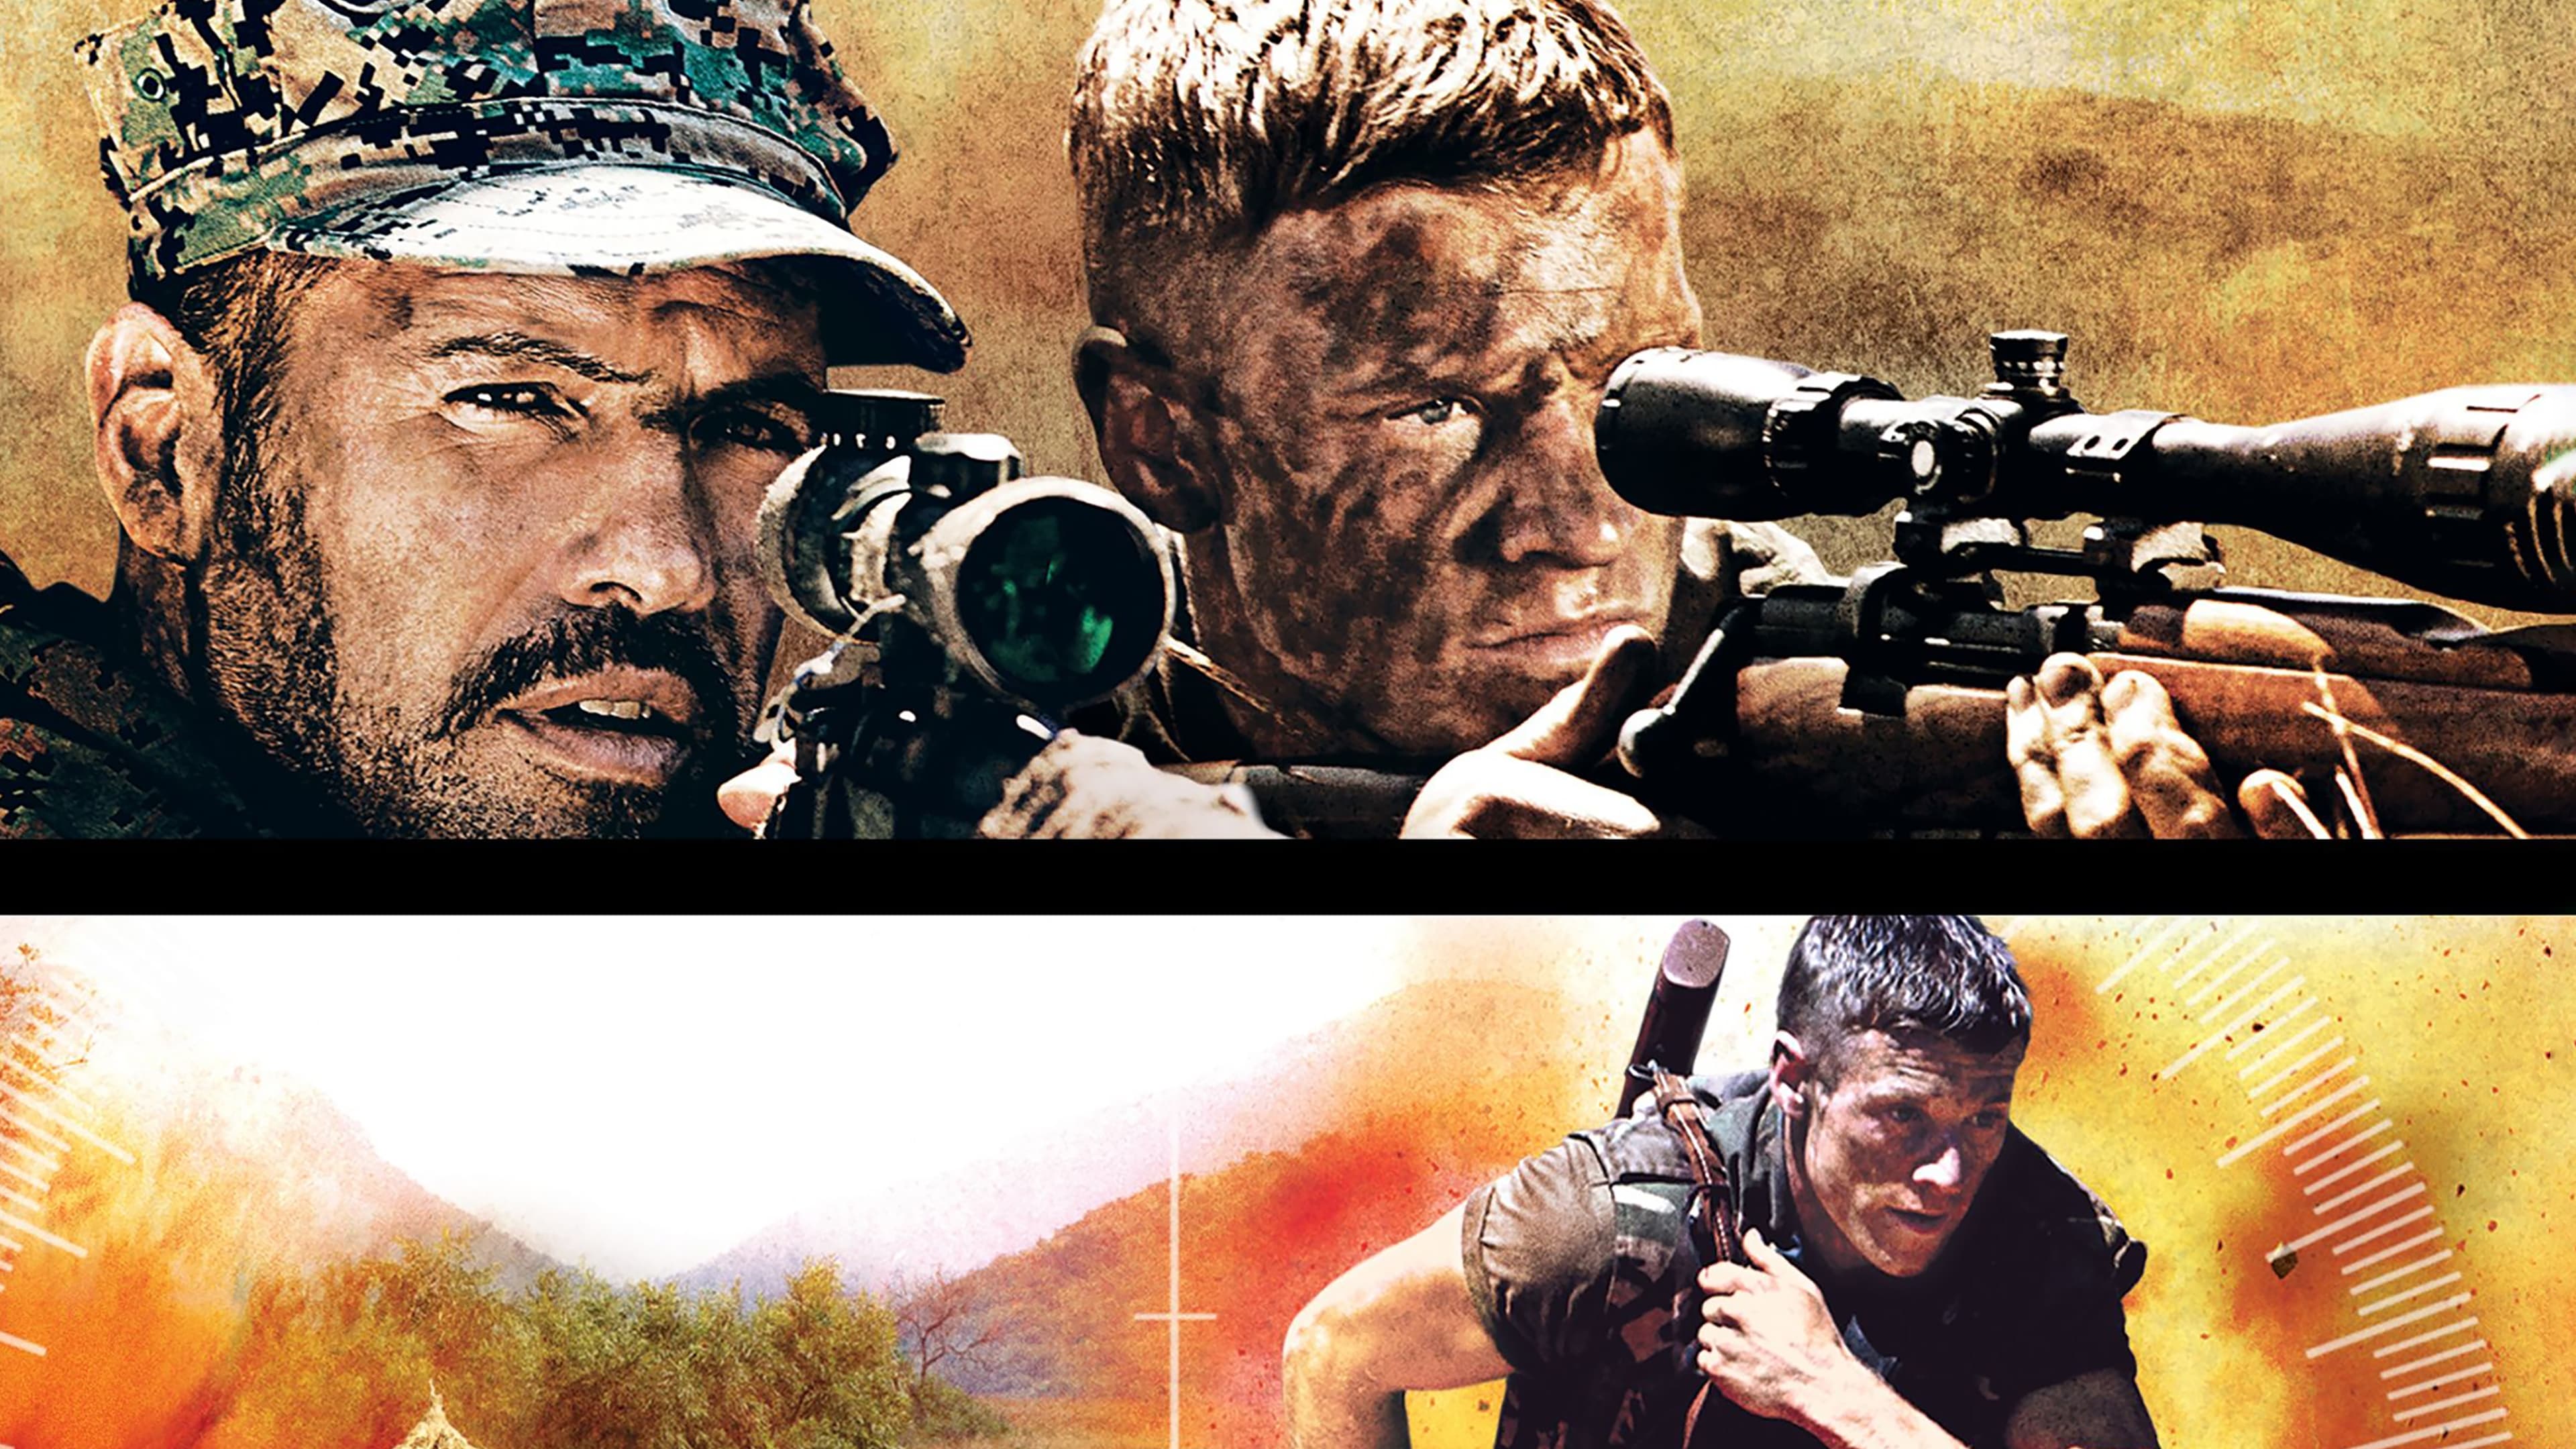 Poster Phim Lính Bắn Tỉa 4: Nạp Đạn (Sniper: Reloaded)